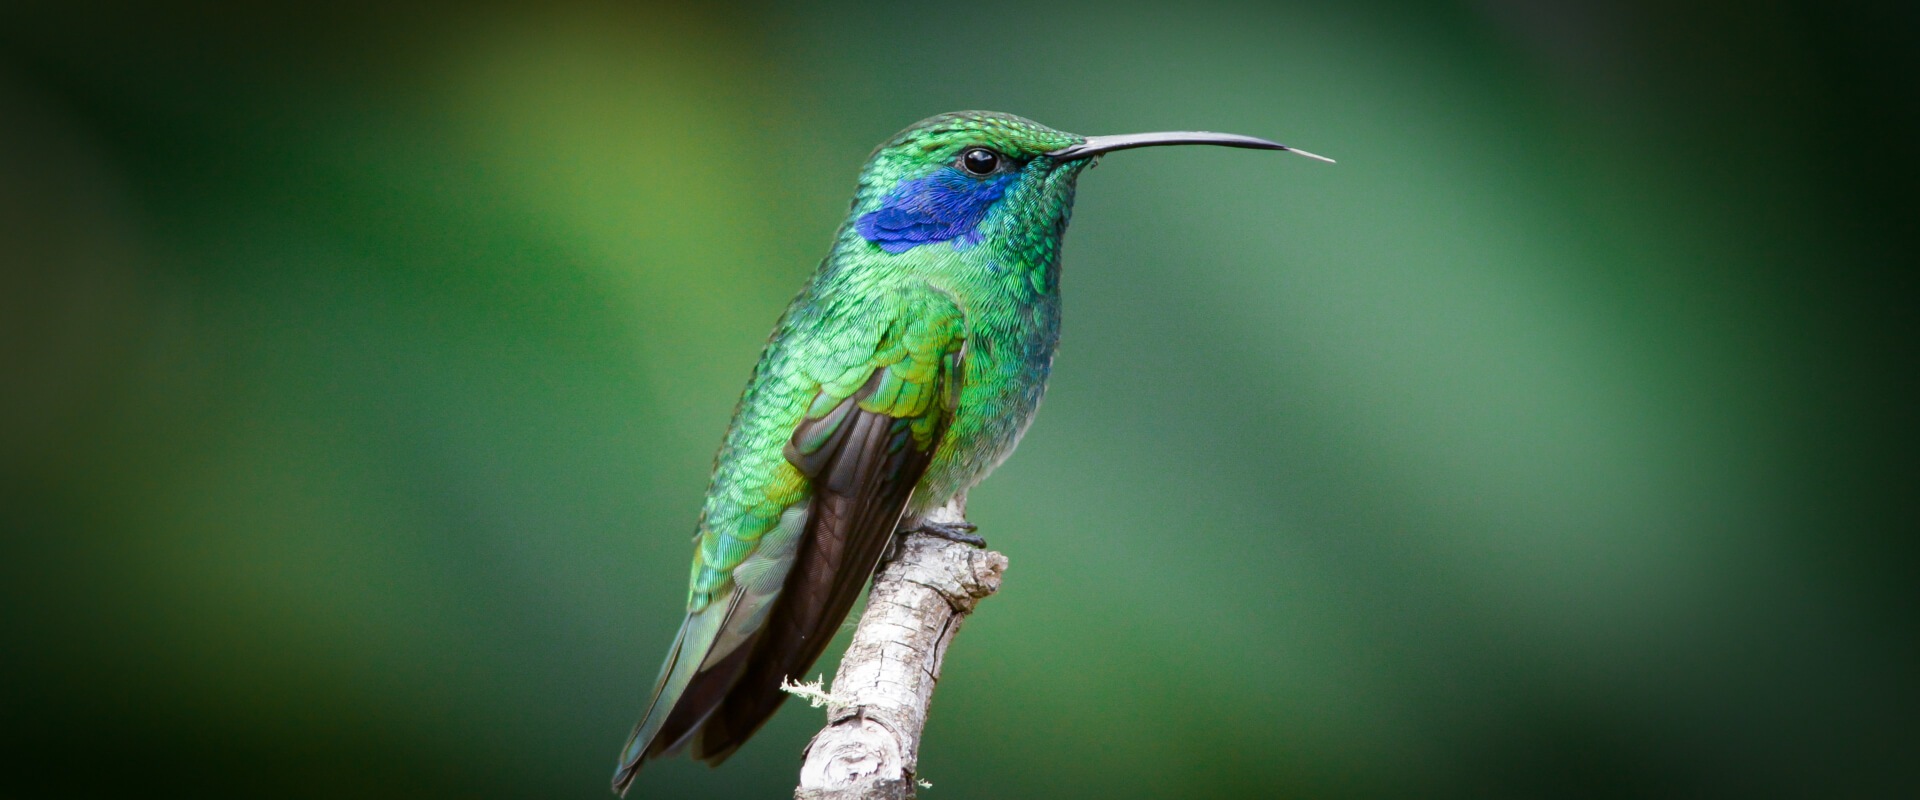 Observación de aves en la Reserva Biológica Bosque Nuboso Monteverde | Costa Rica Jade Tours